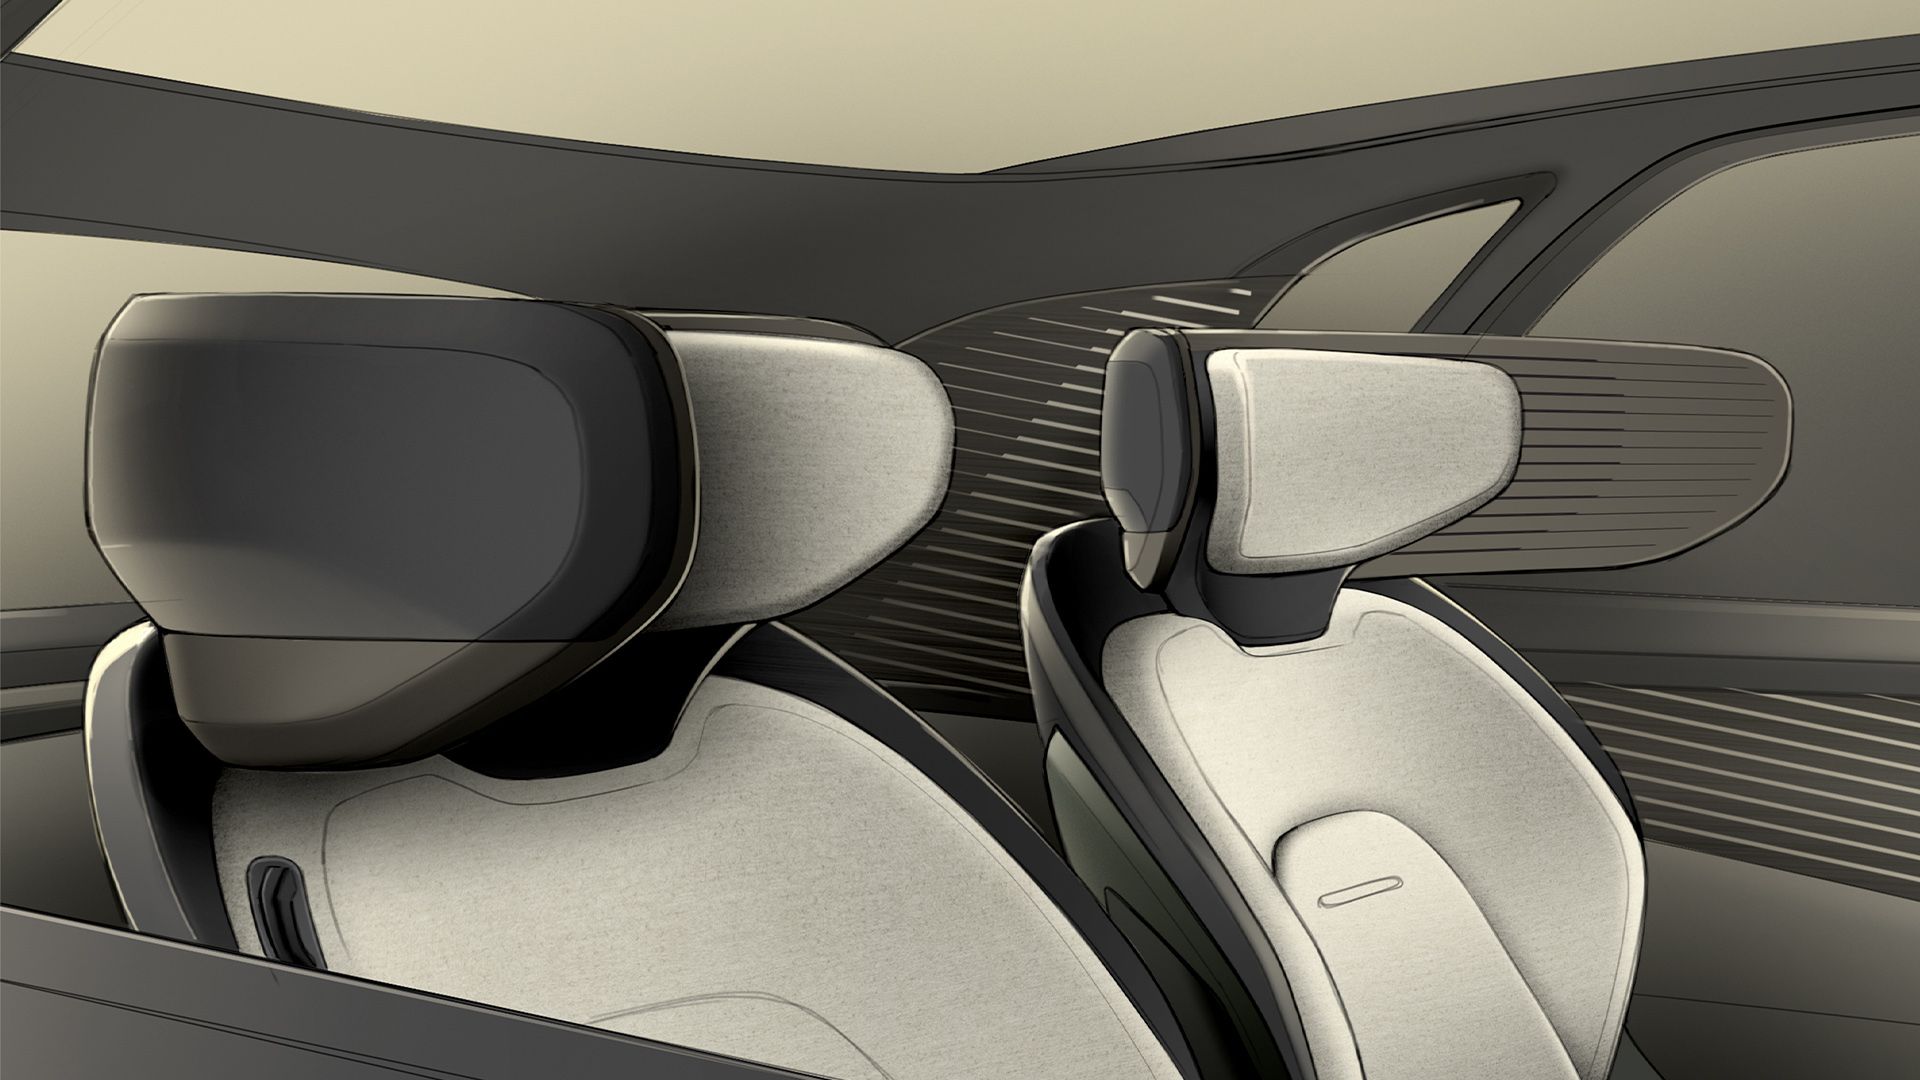 Croquis numérique montrant les écrans des sièges auto qui permettent de s'isoler dans le véhicule.